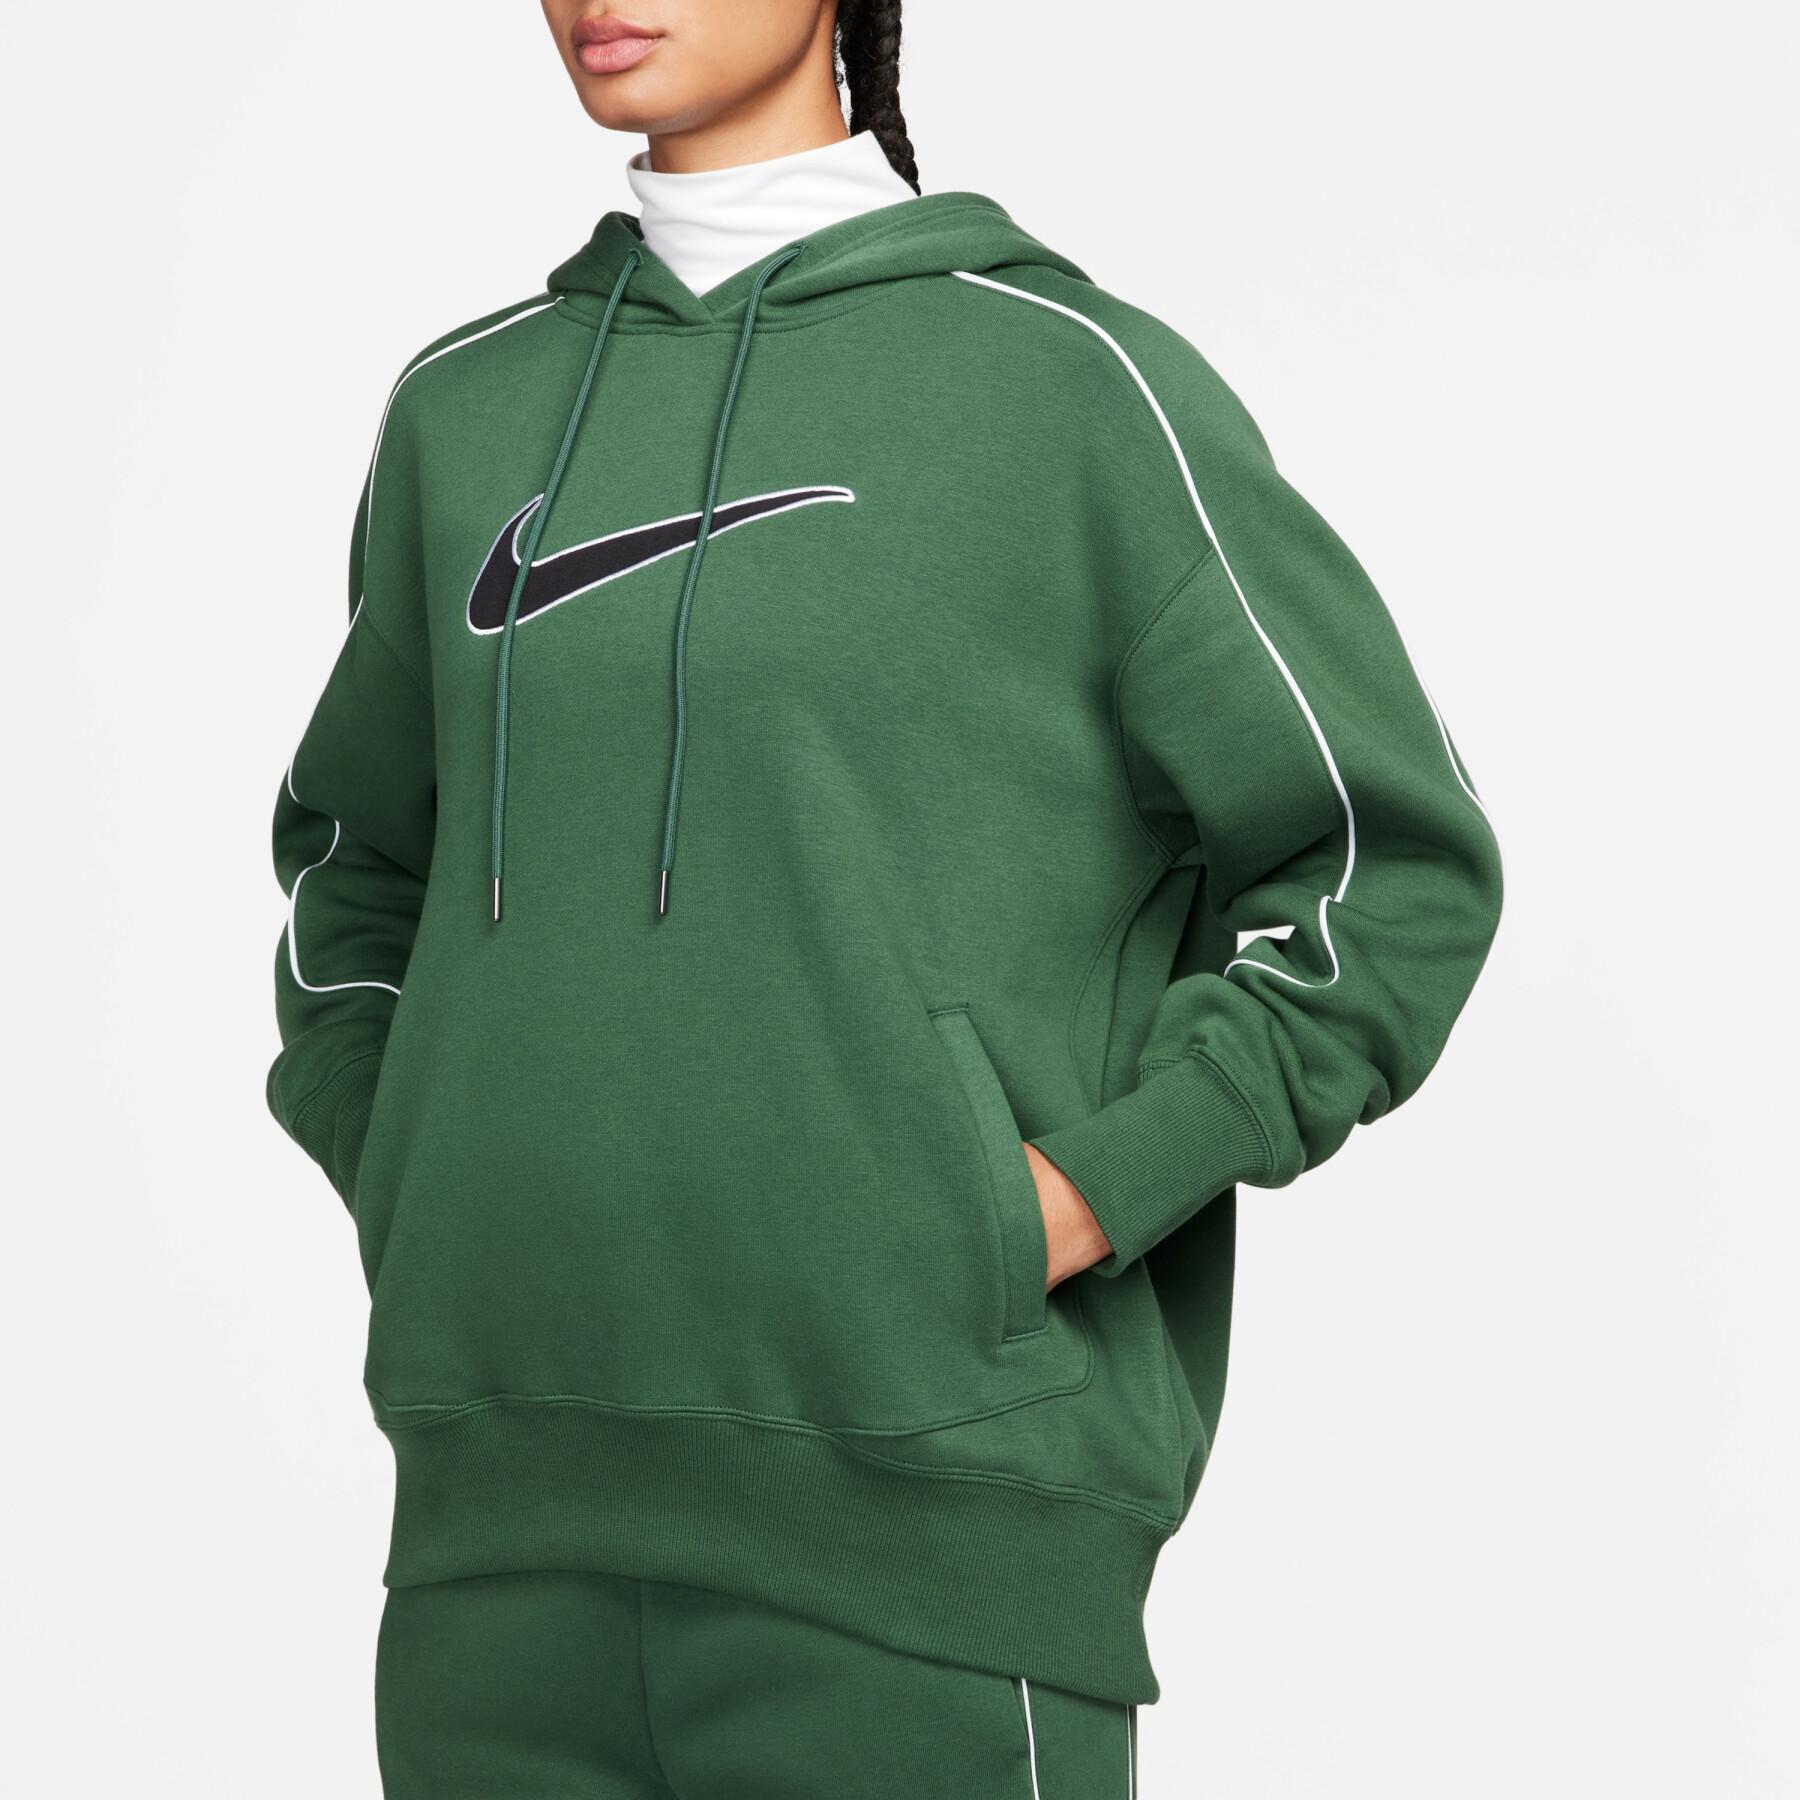 Women's oversized hooded fleece sweatshirt Nike